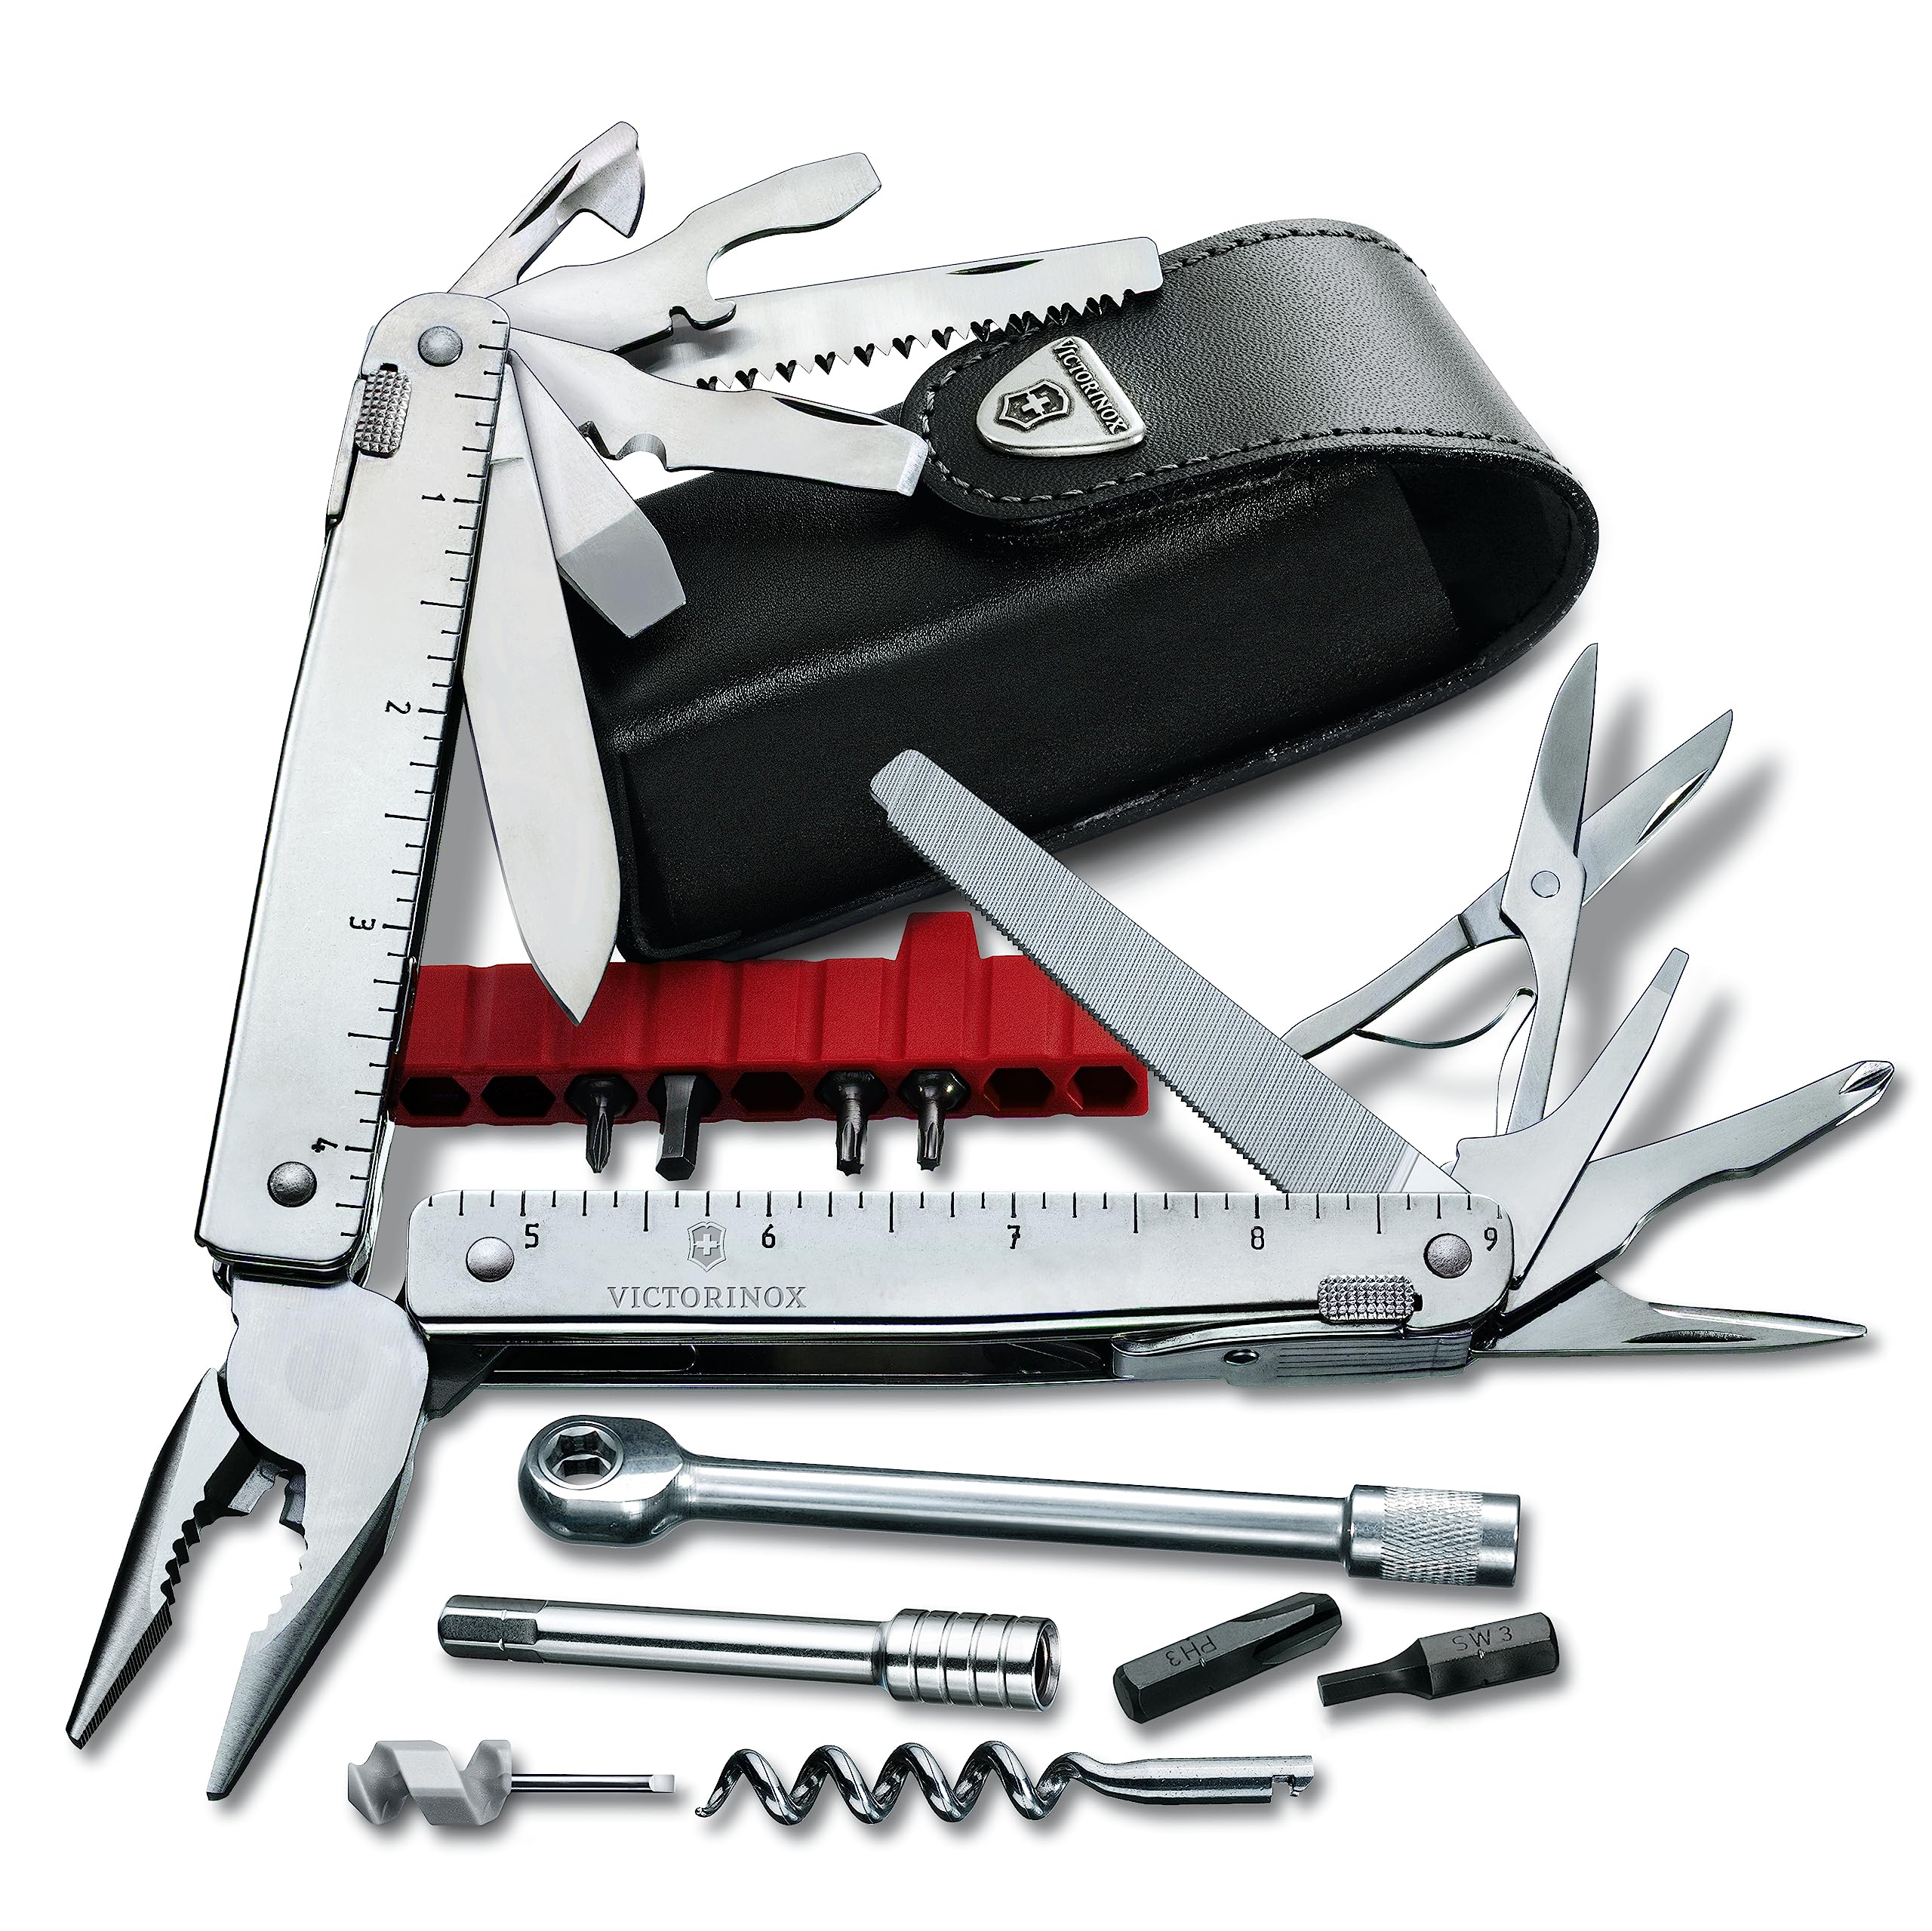 Victorinox, Schweizer Taschenmesser, Swiss Tool X Plus Ratchet, Taschen Werkzeug, Multitool mit 40 Funktionen, Kombi-Spitzzange, Feststellklinge